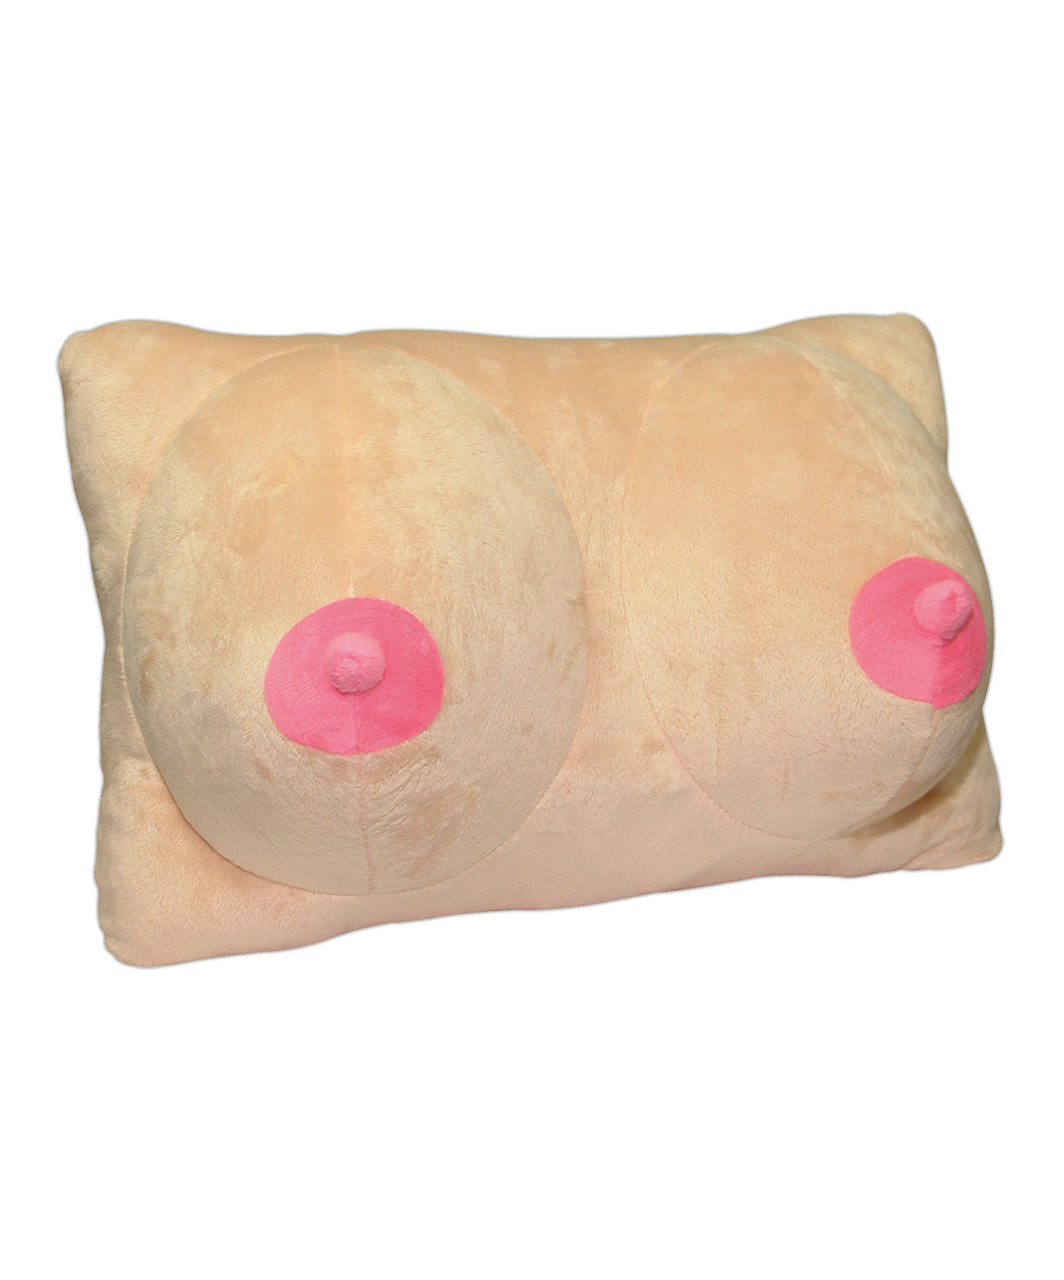 OV плюшевая подушка в форме груди